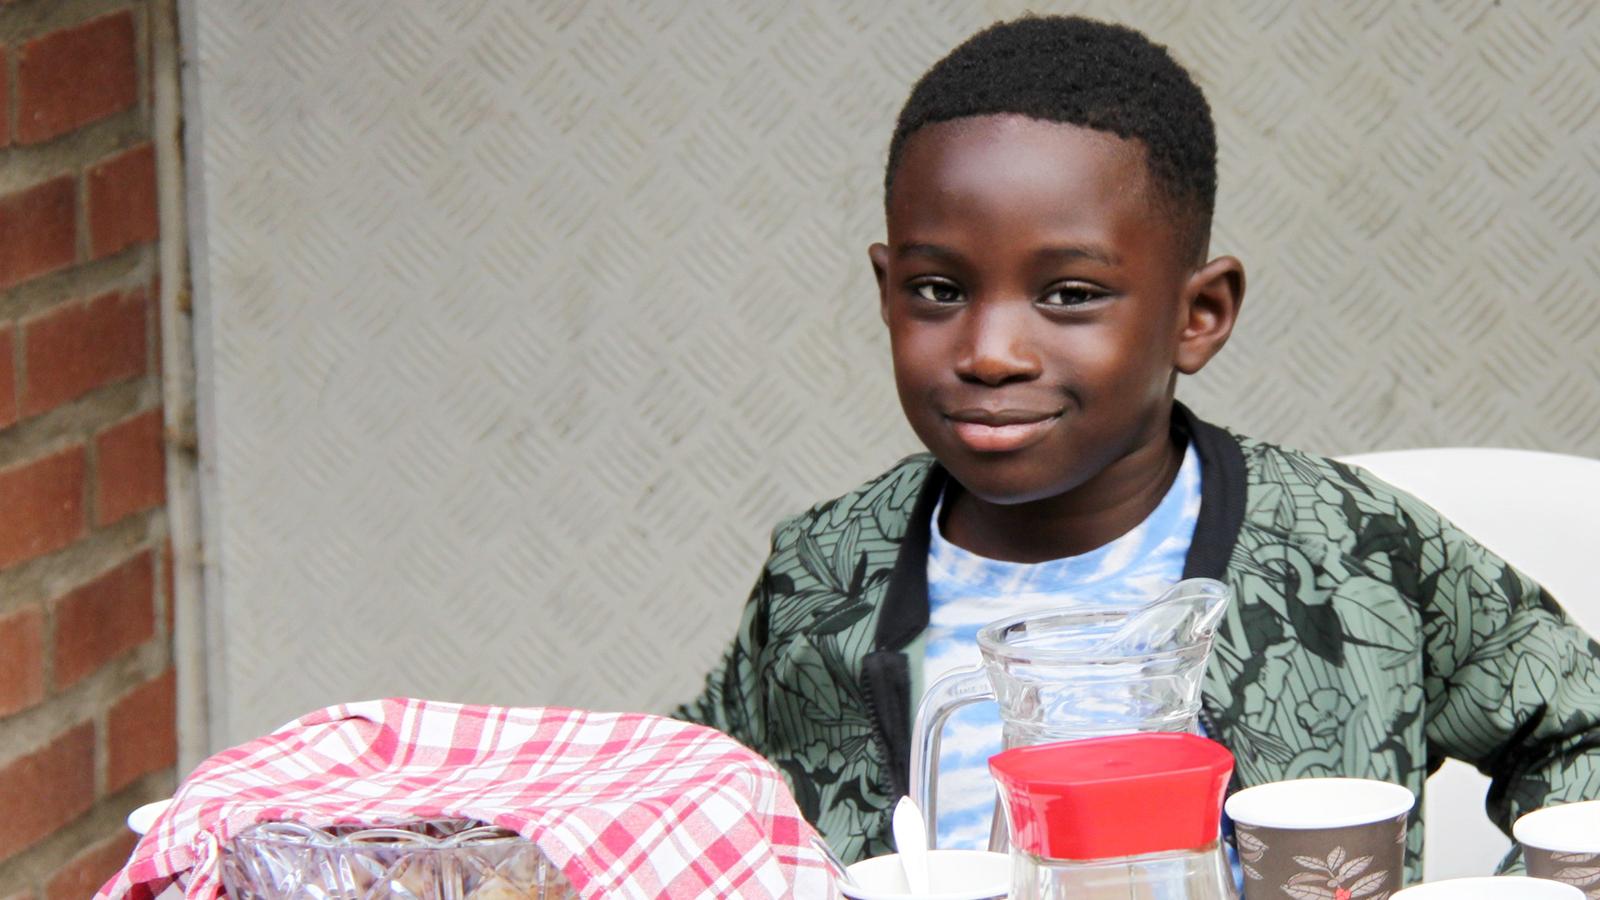 En liten pojke sitter bakom ett bord med bullar och saft att dela ut.